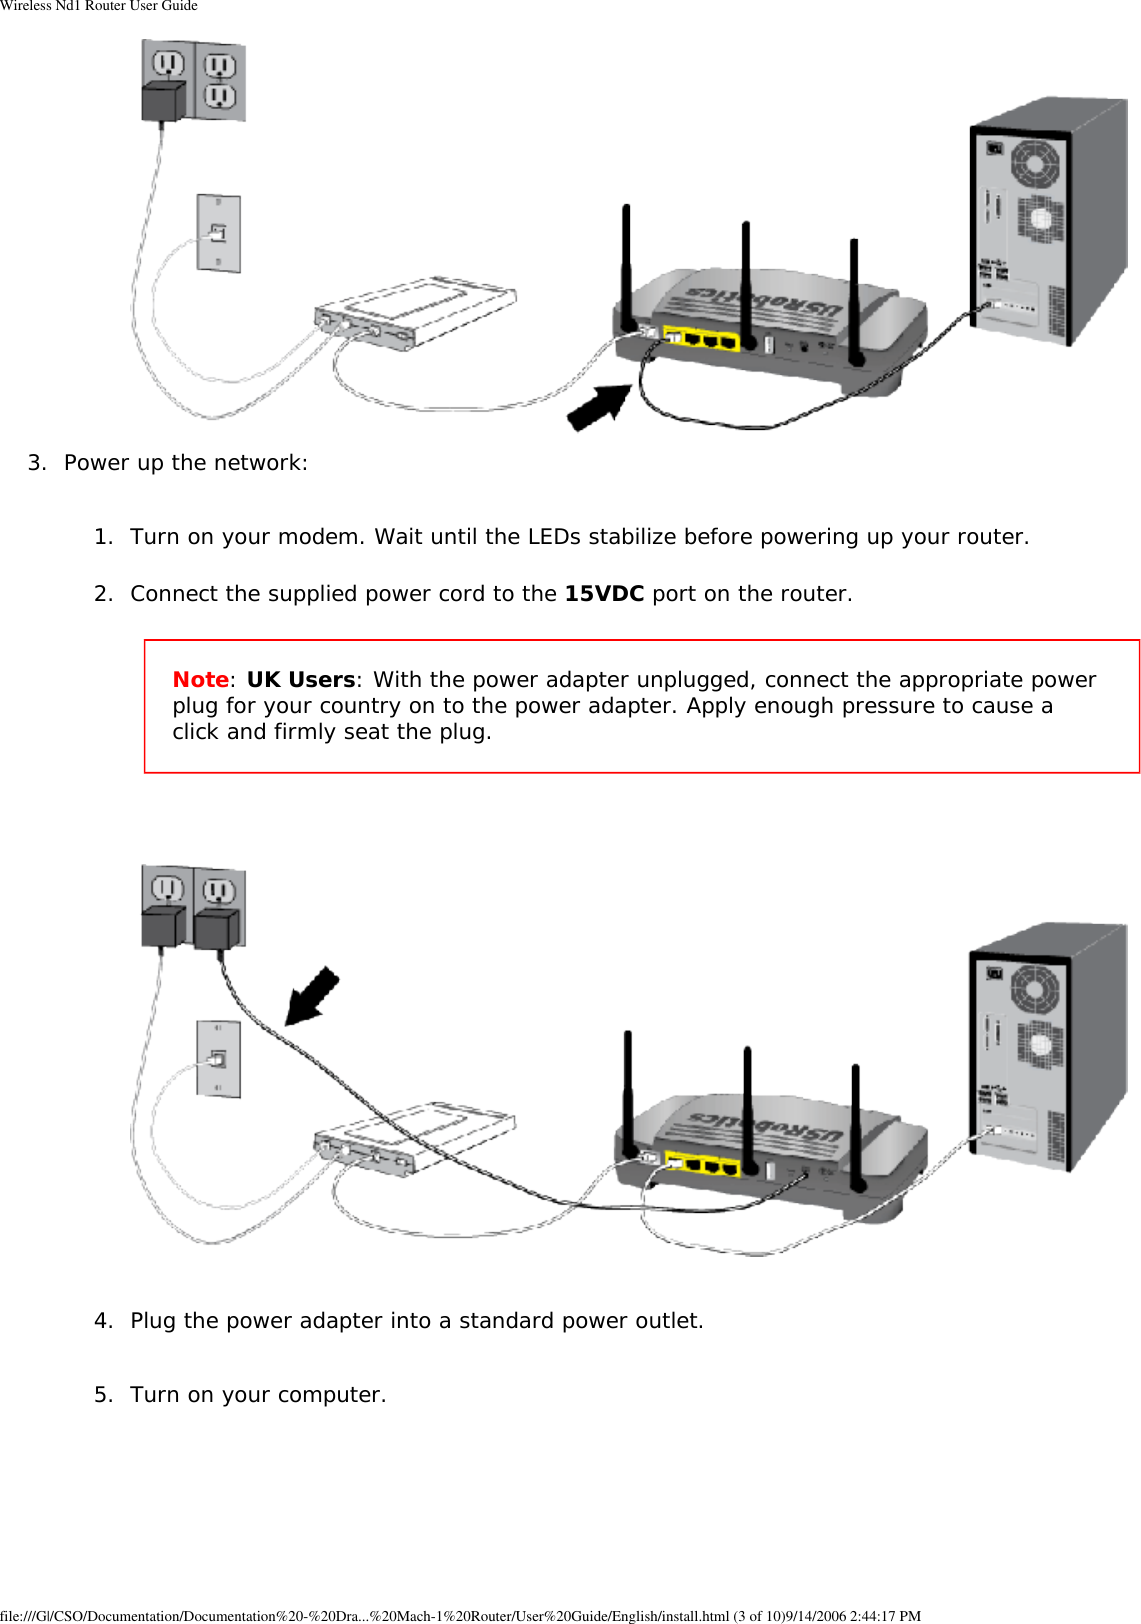 Page 10 of GemTek Technology R950630GN USRobotics Wireless Nd1 Router User Manual Wireless Nd1 Router User Guide